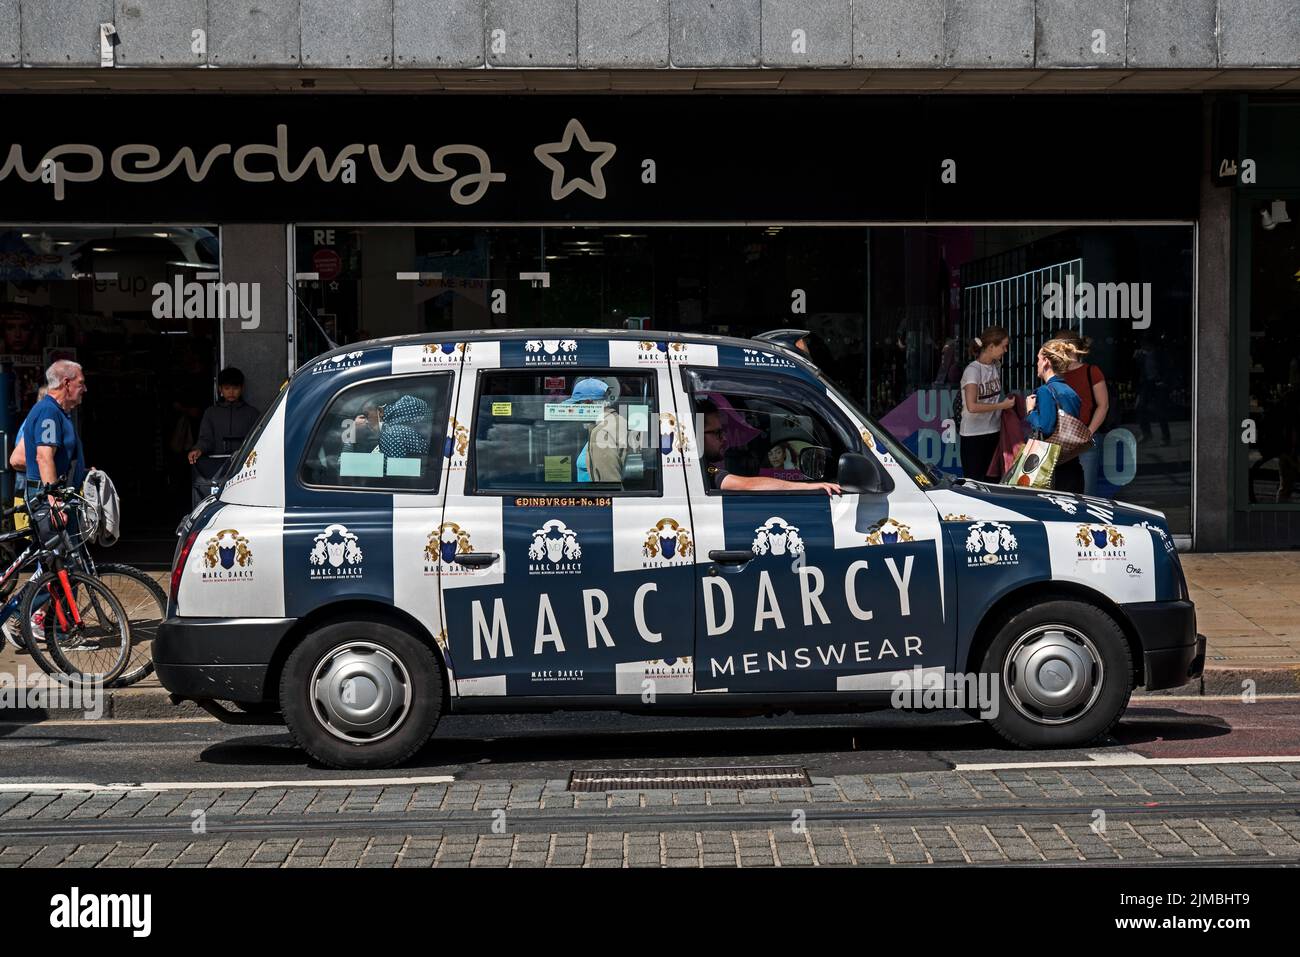 Marc Darcy Menswear anunciando en un taxi de Edimburgo. Foto de stock